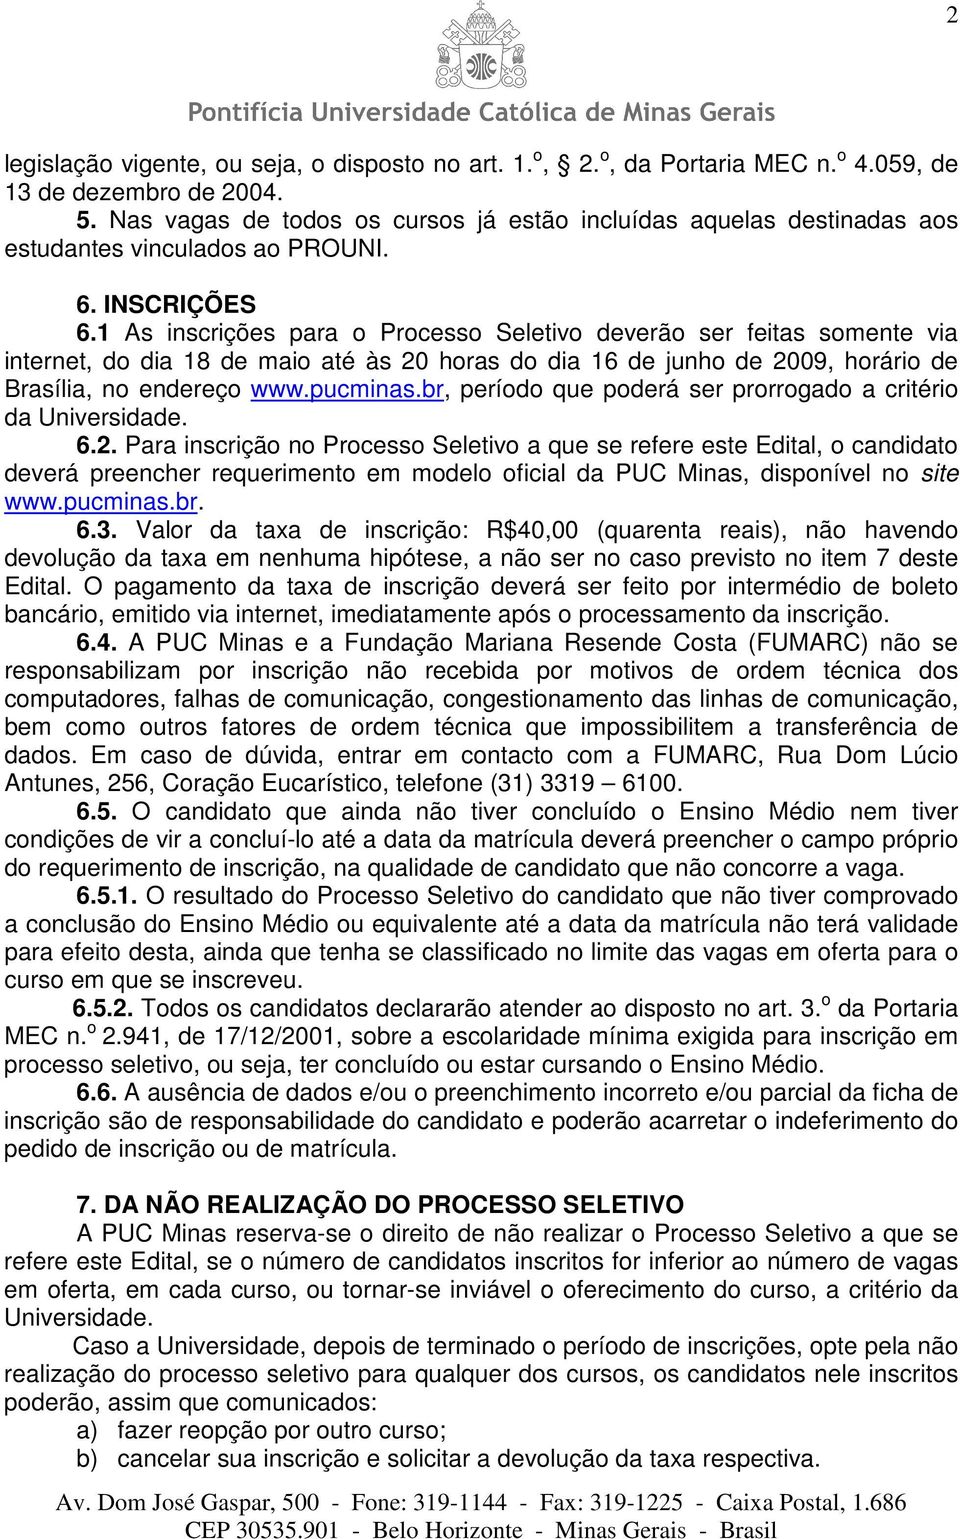 1 As inscrições para o Processo Seletivo deverão ser feitas somente via internet, do dia 18 de maio até às 20 horas do dia 16 de junho de 2009, horário de Brasília, no endereço www.pucminas.